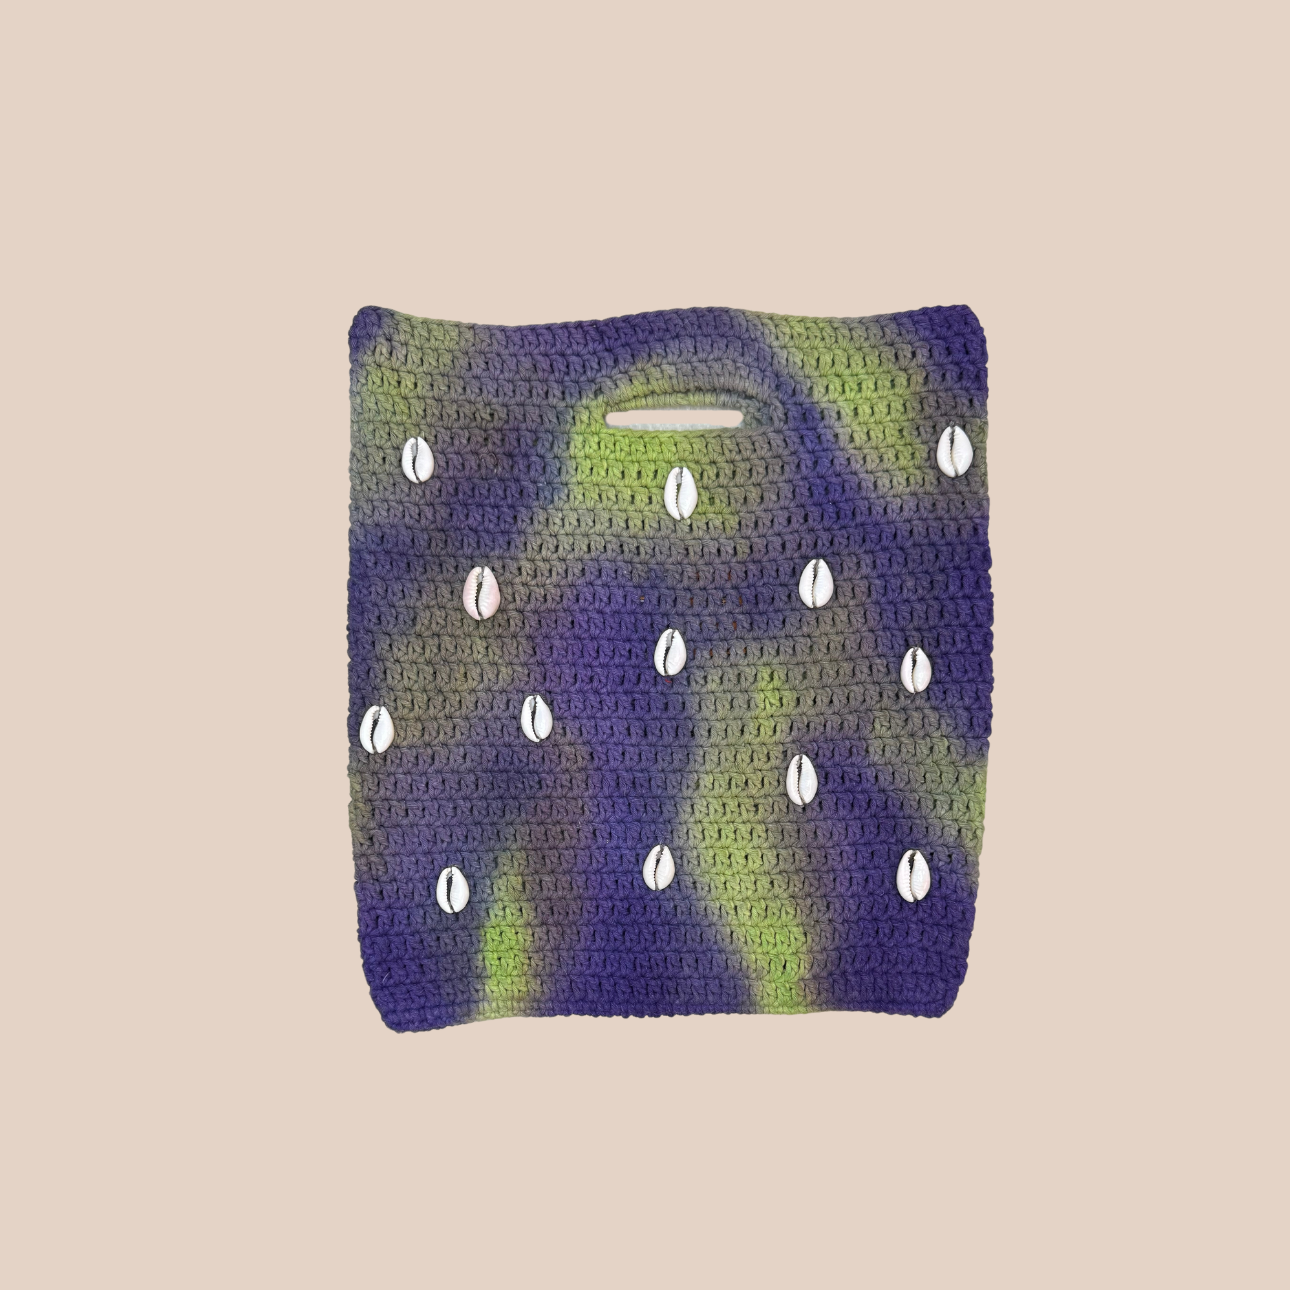  Image du sac CONCHA decoration coquillages cousues main de Maison Badigo, sac en laine crocheté multicolore unique et tendance